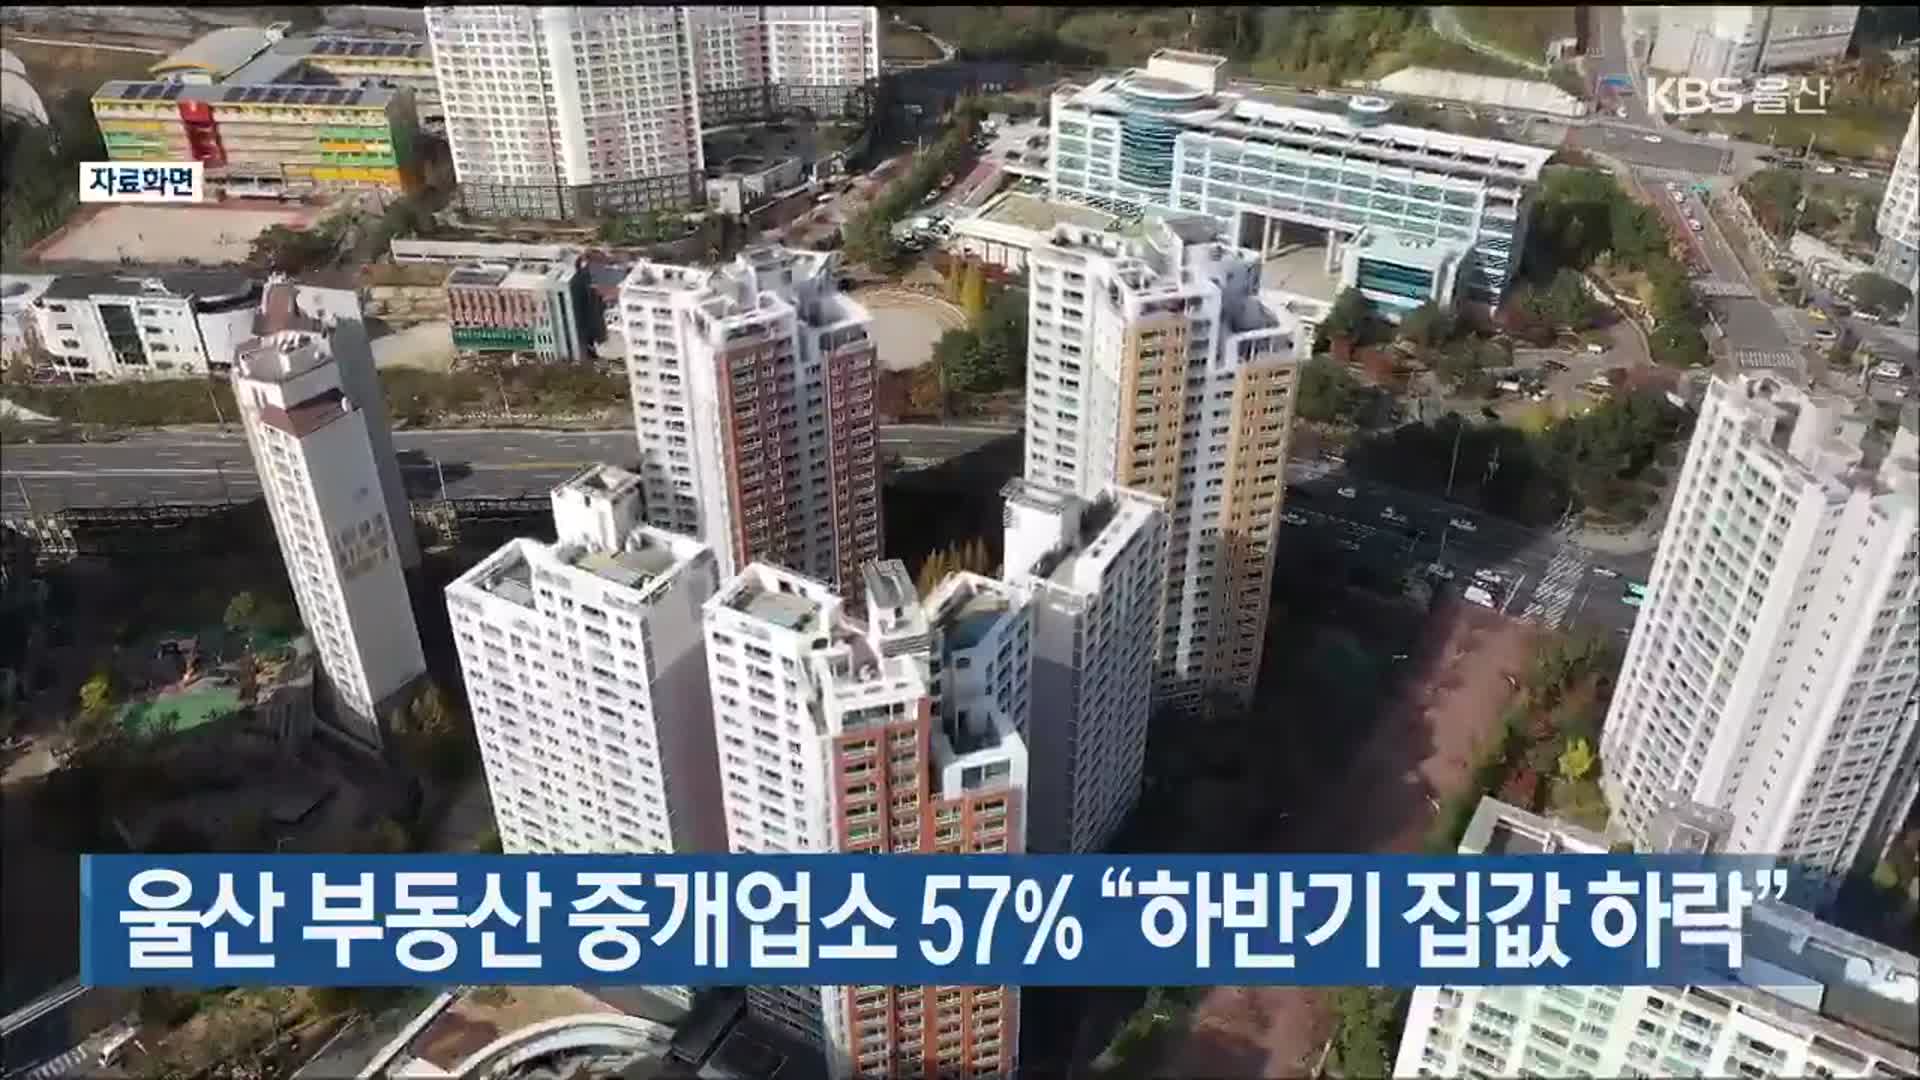 울산 부동산 중개업소 57% “하반기 집값 하락”